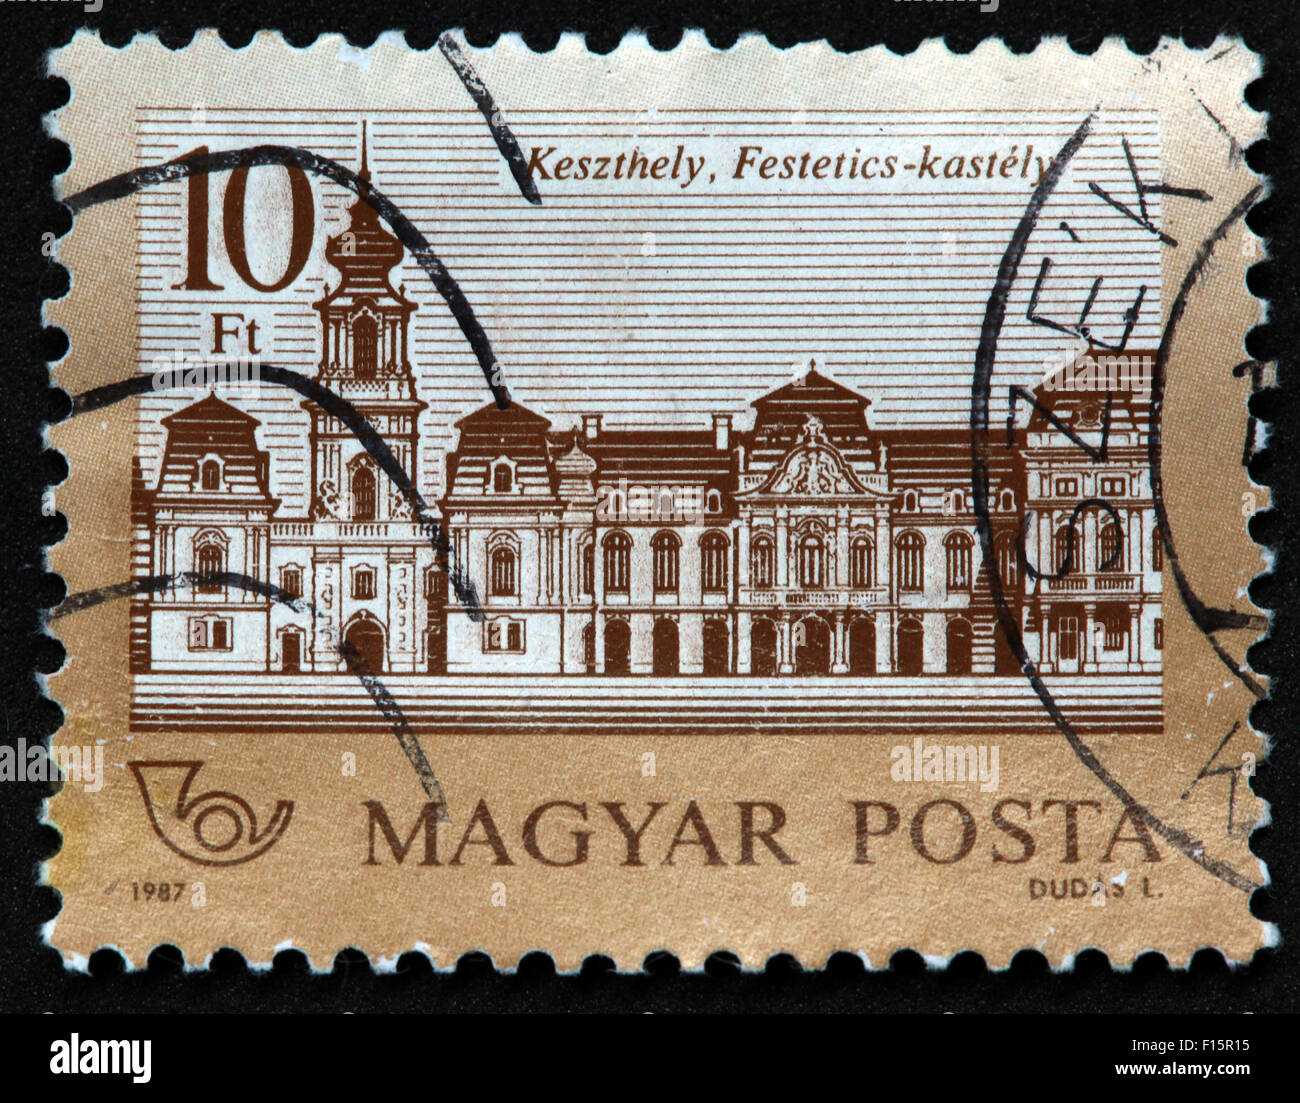 Magyar Posta 1987 Dudas 10Ft castle house Keszthely Festetics-kastely SZE SZEK stamp Stock Photo